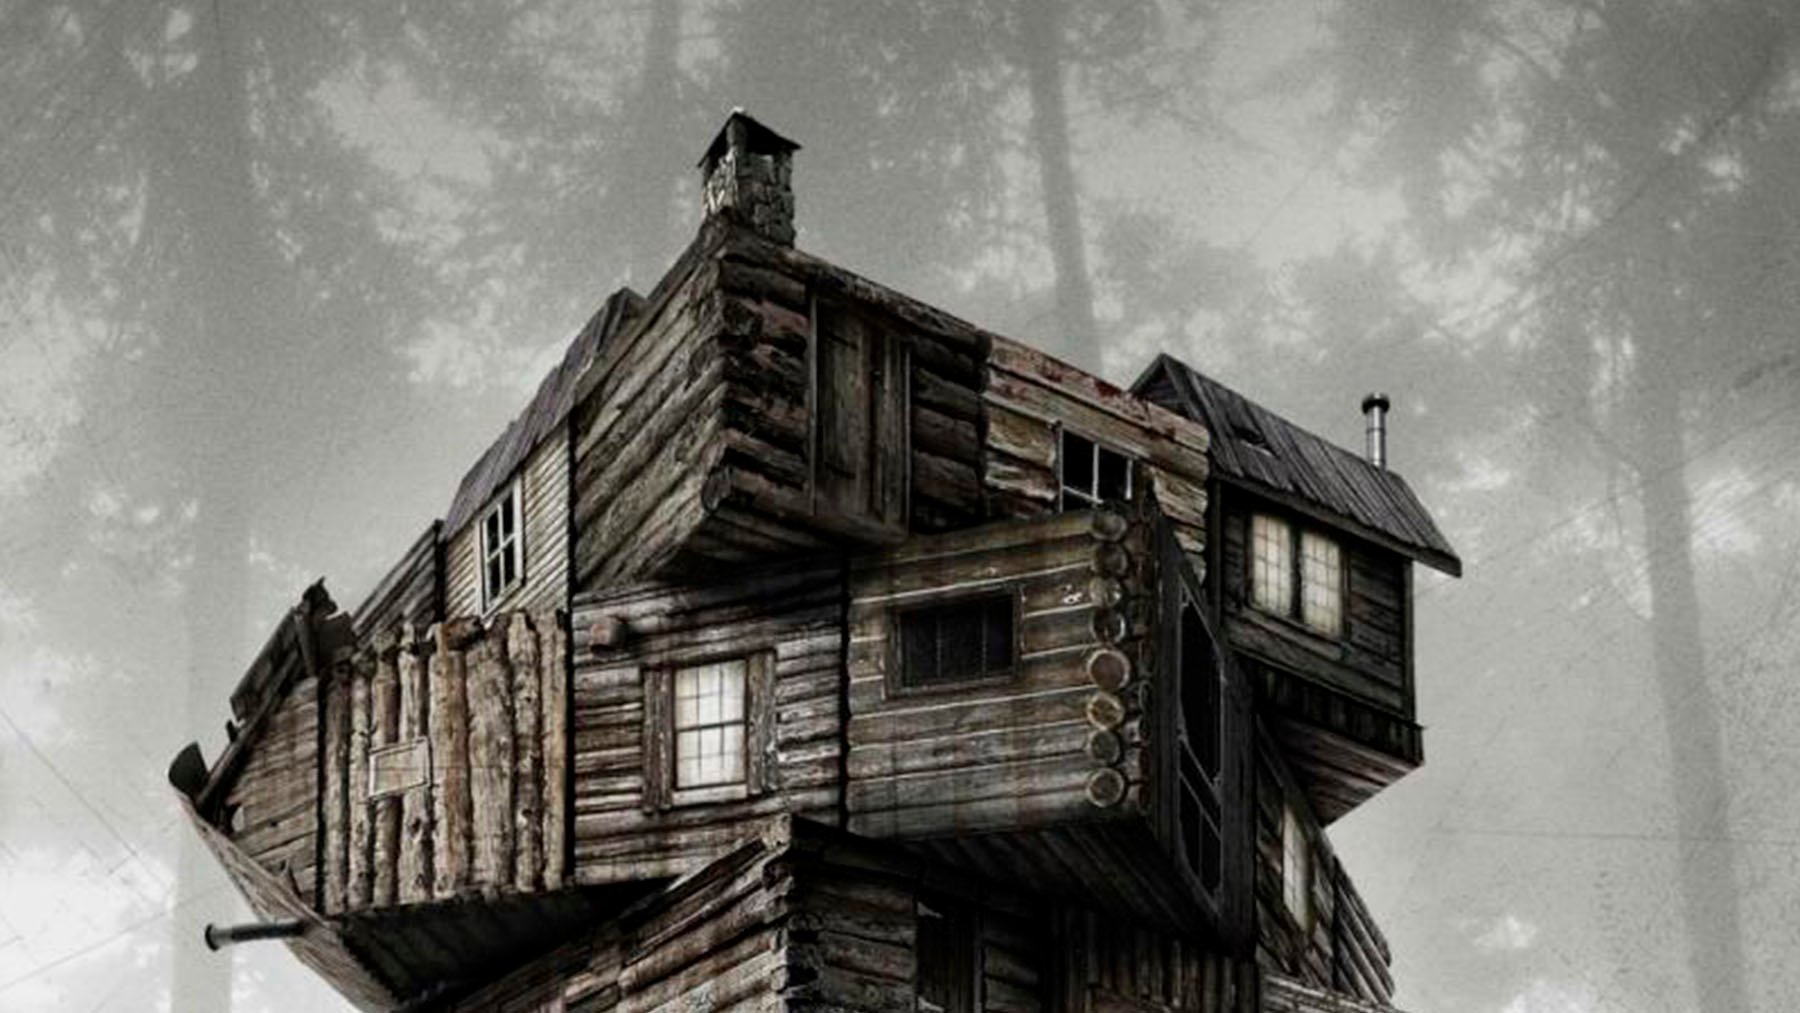 El increíble thriller de terror de Chris Hemsworth que está arrasando en Amazon Video